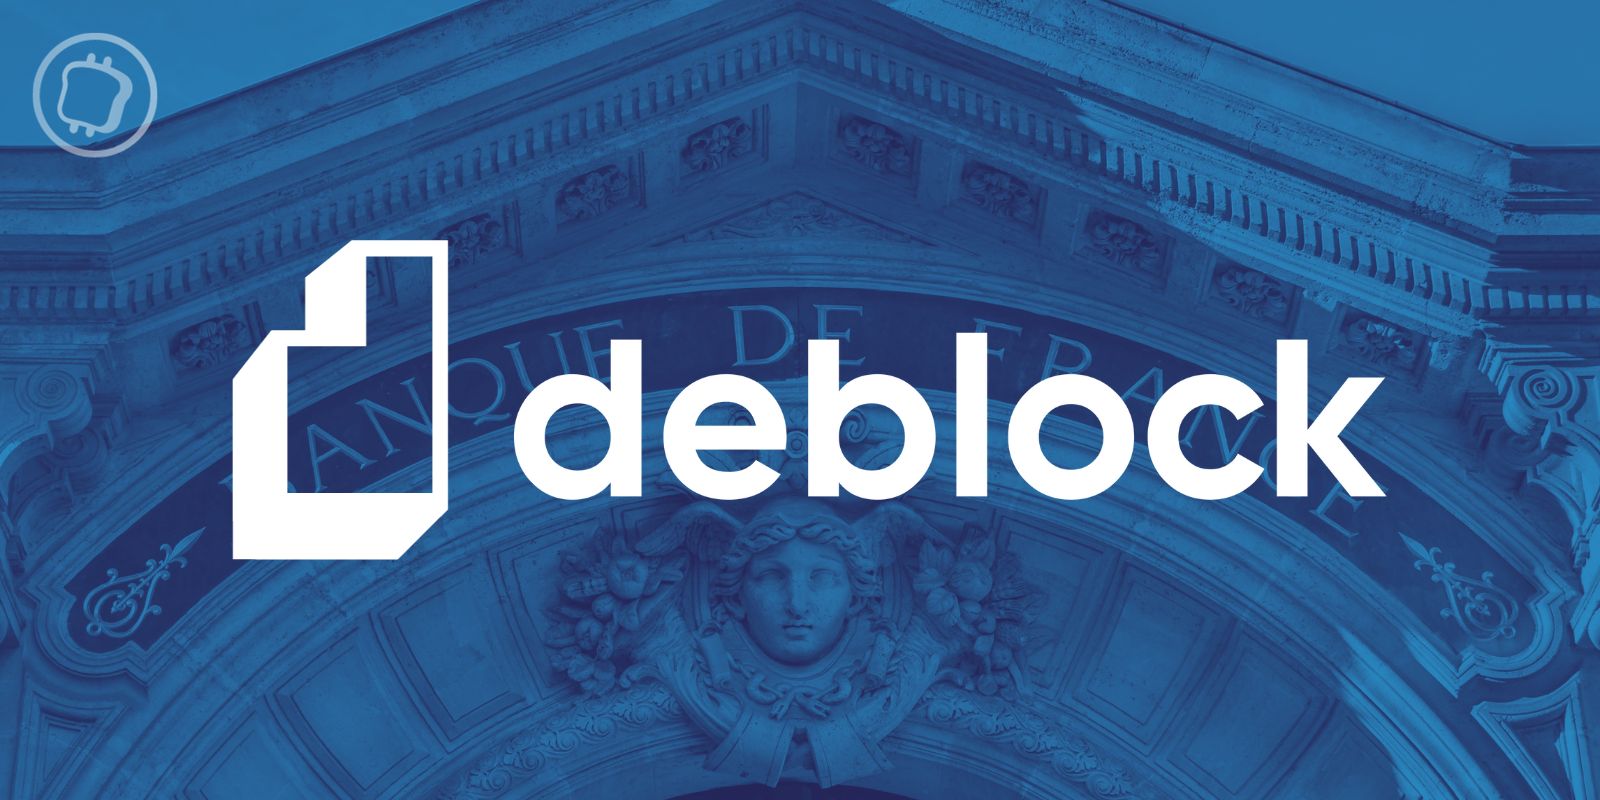 Deblock est devenu le premier PSAN à obtenir l’agrément d’Établissement de Monnaie Électronique auprès de la Banque de France.